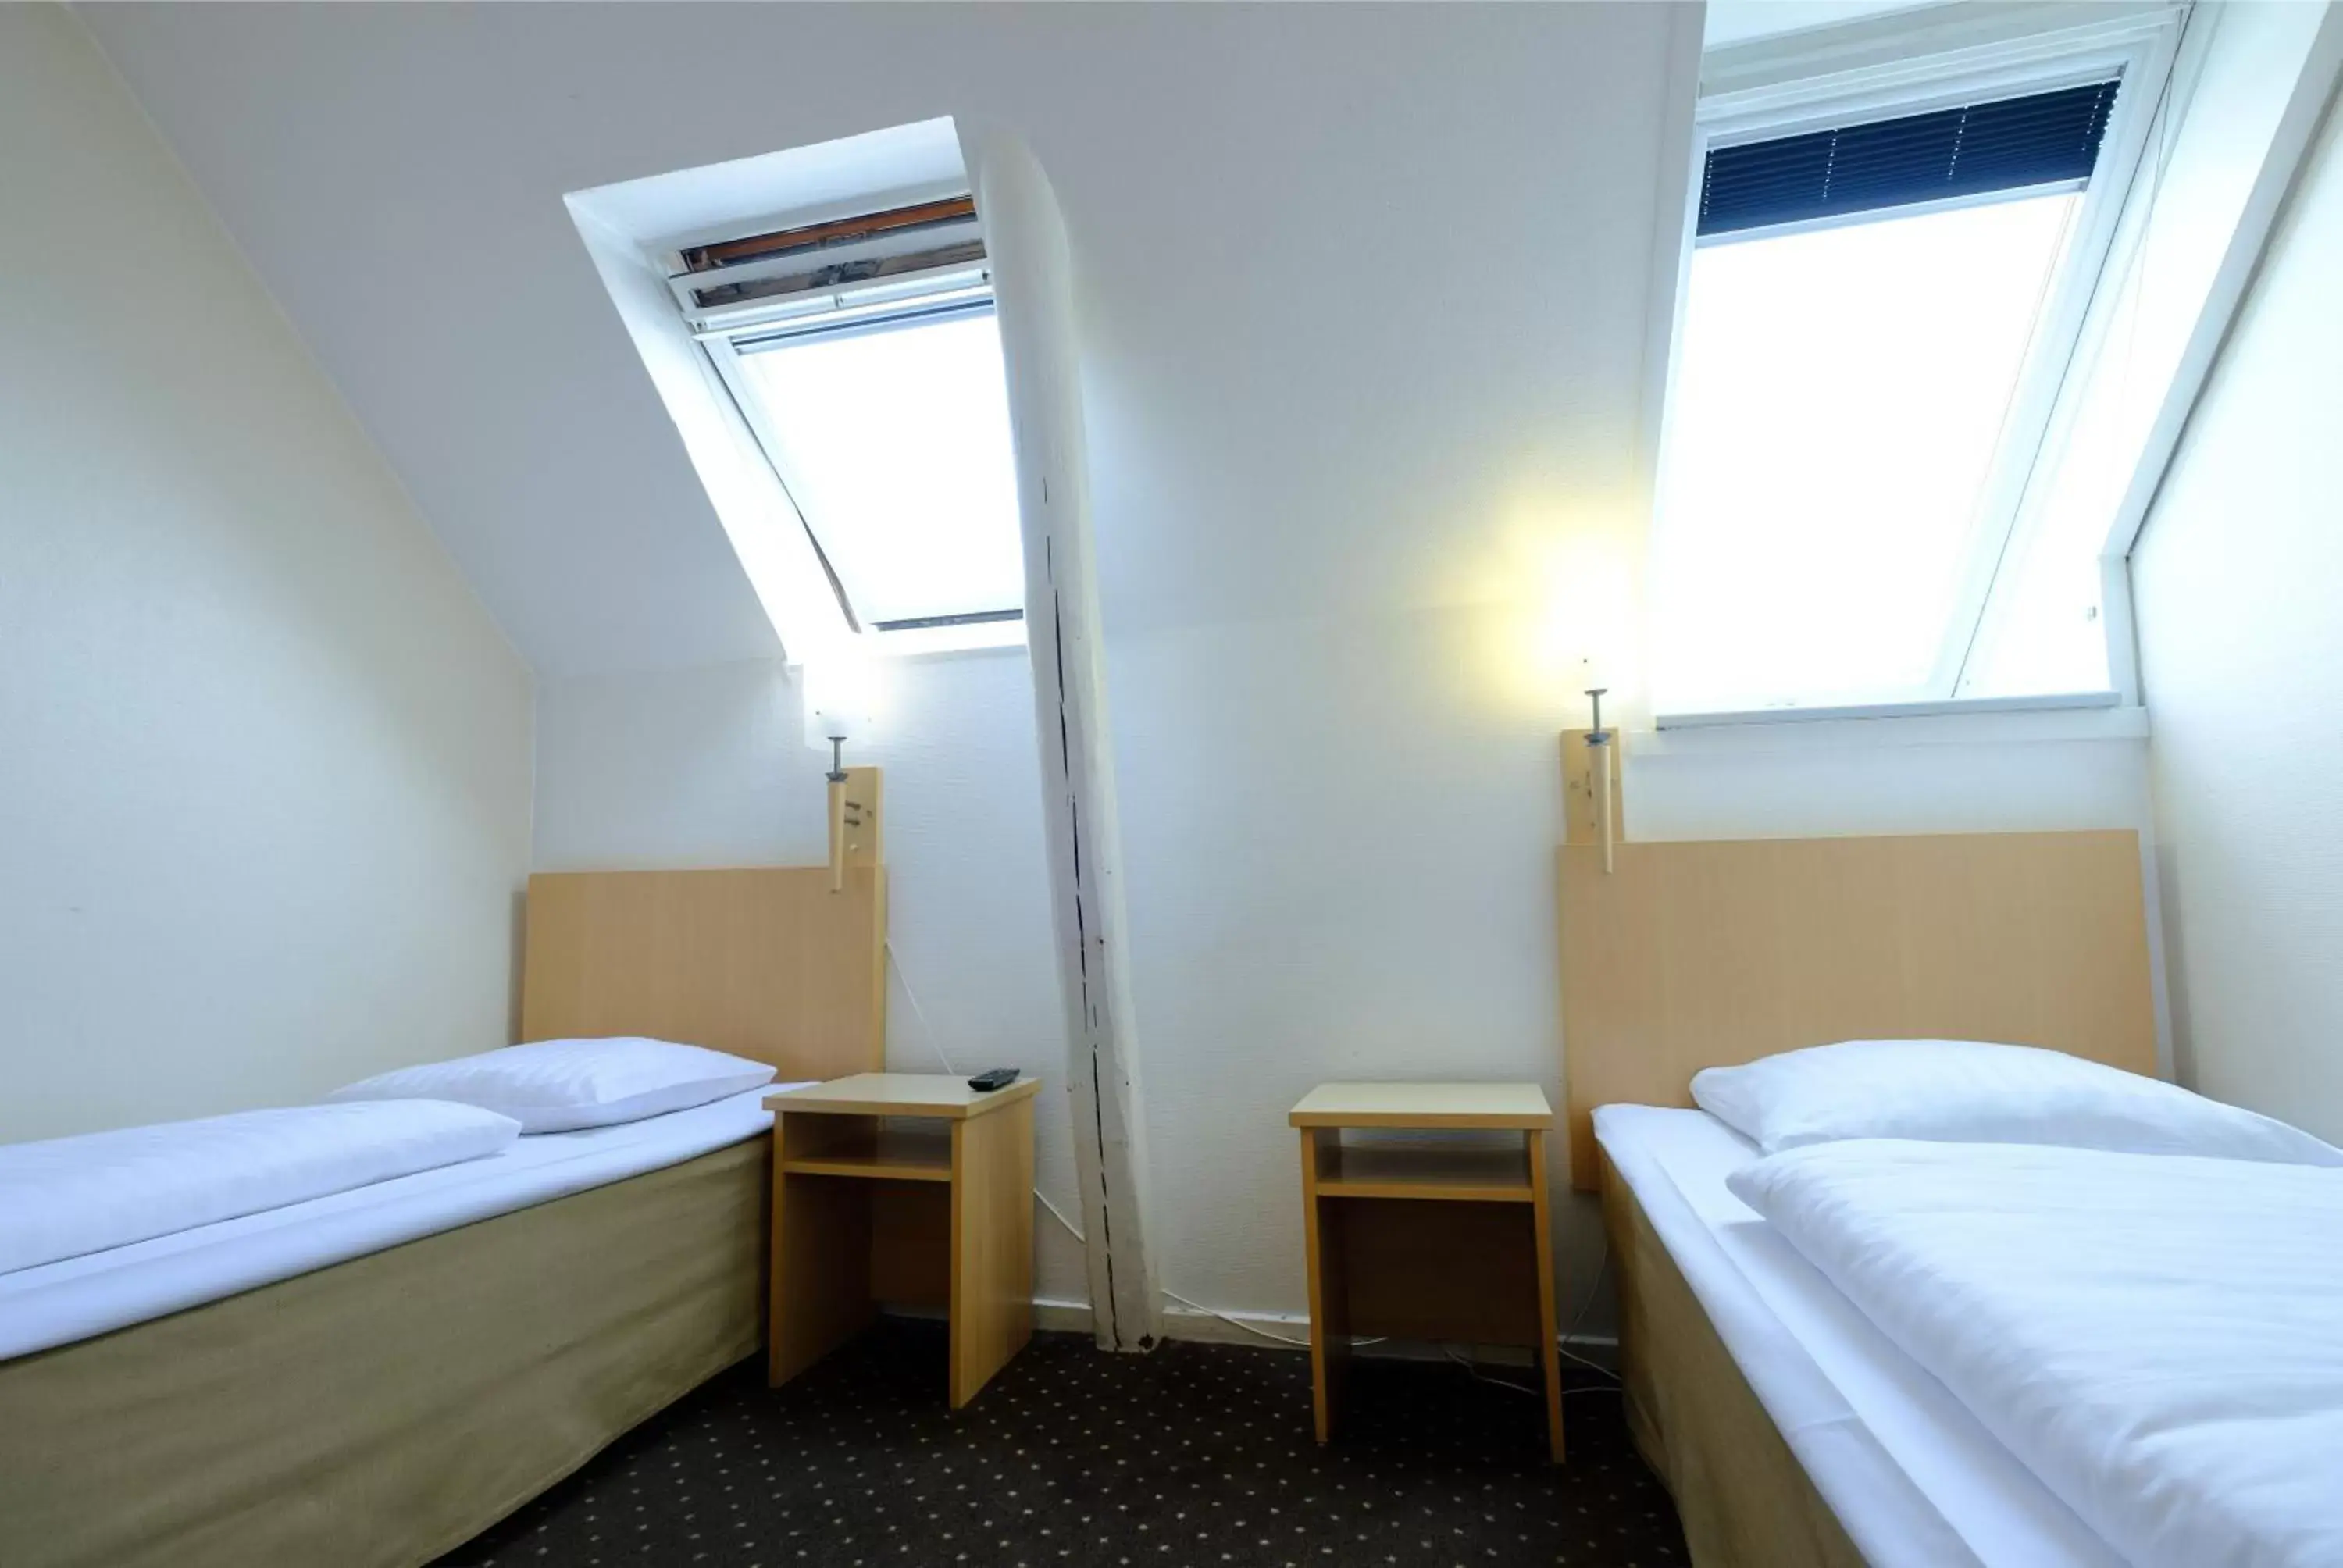 Bed, Room Photo in Zleep Hotel Copenhagen City